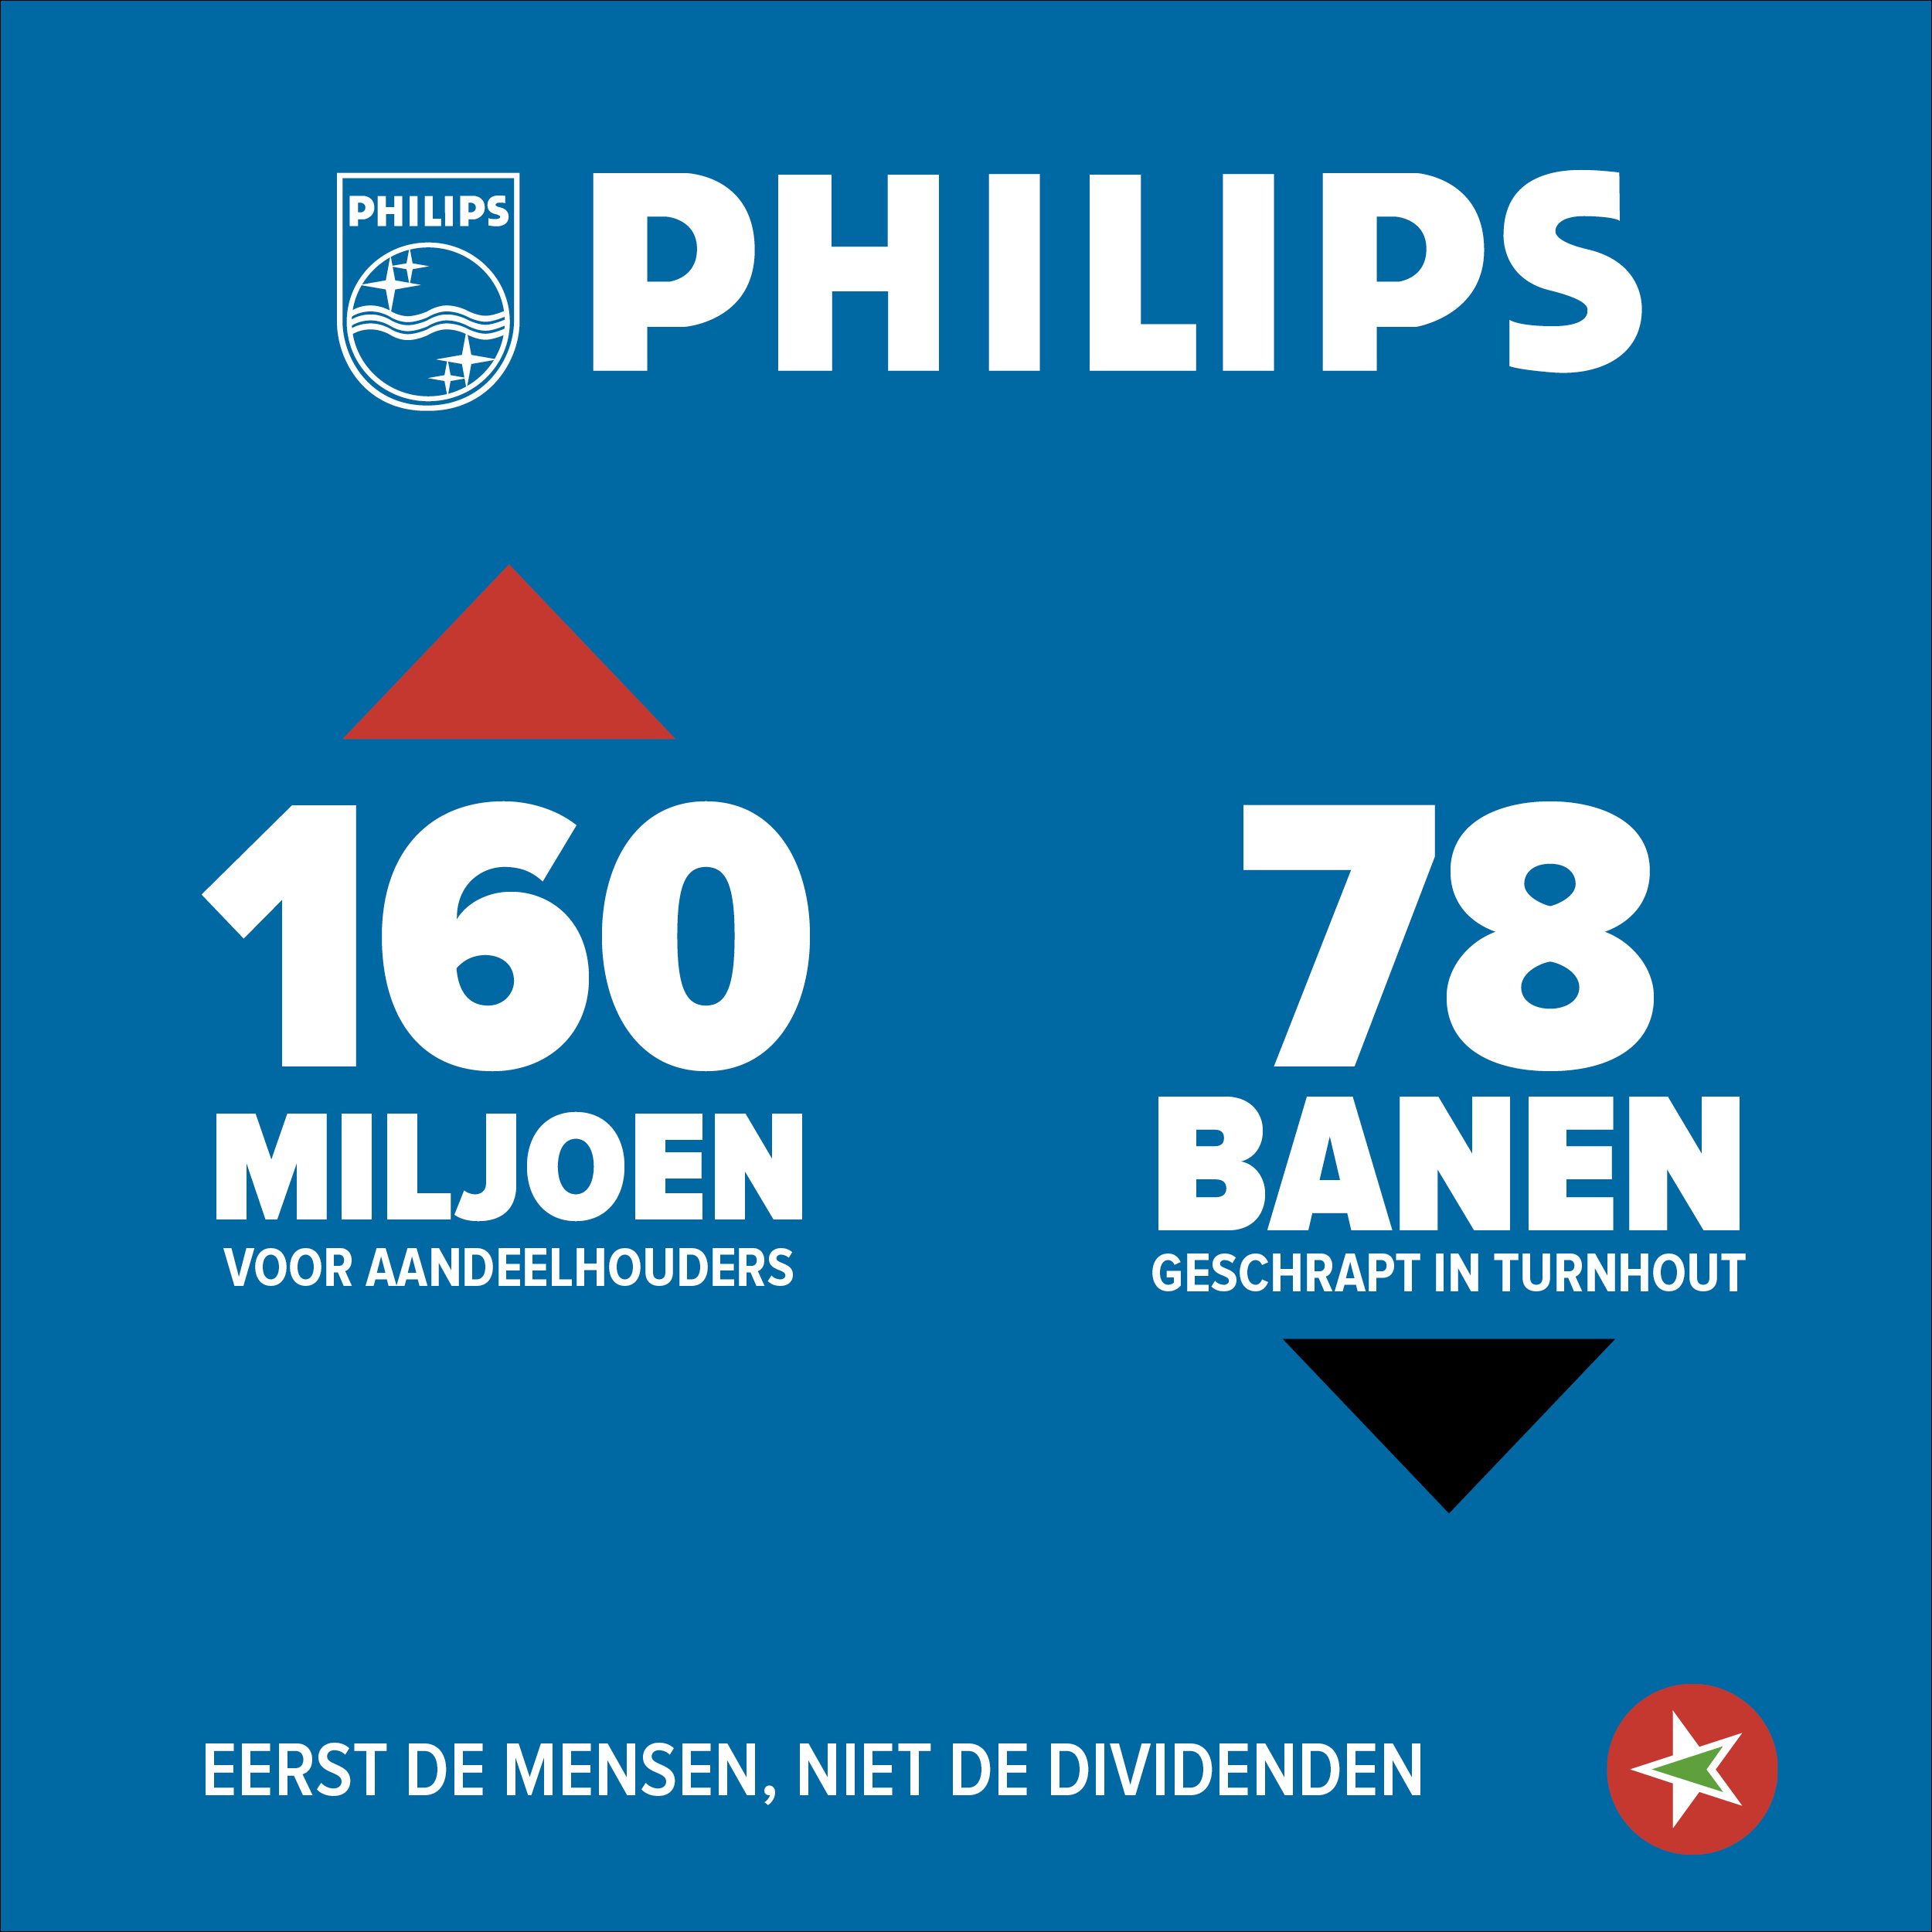 Philips Turnhout: de cijfers achter de ontslagen